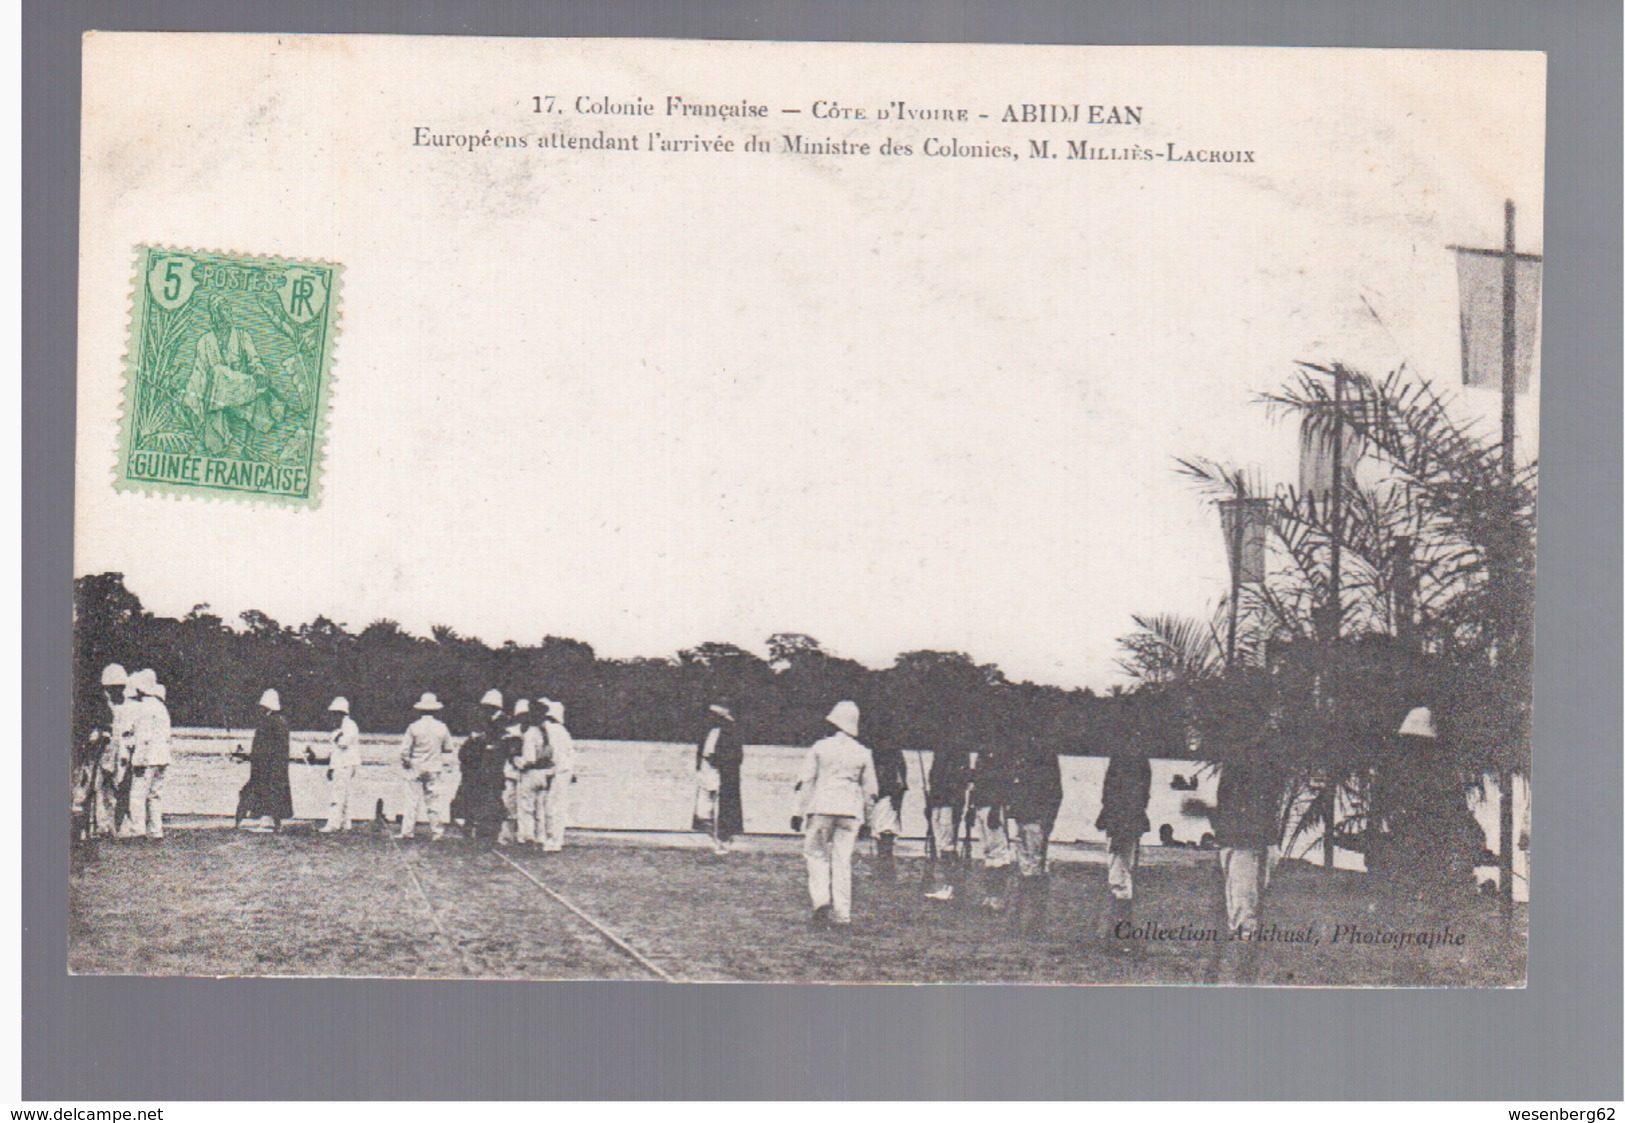 Cote D'Ivoire Abidjean Européens Attendant L'arrivée Du Ministre Des Colonies, M. Milliès-Lacroix Ca 1910 OLD POSTCARD - Côte-d'Ivoire